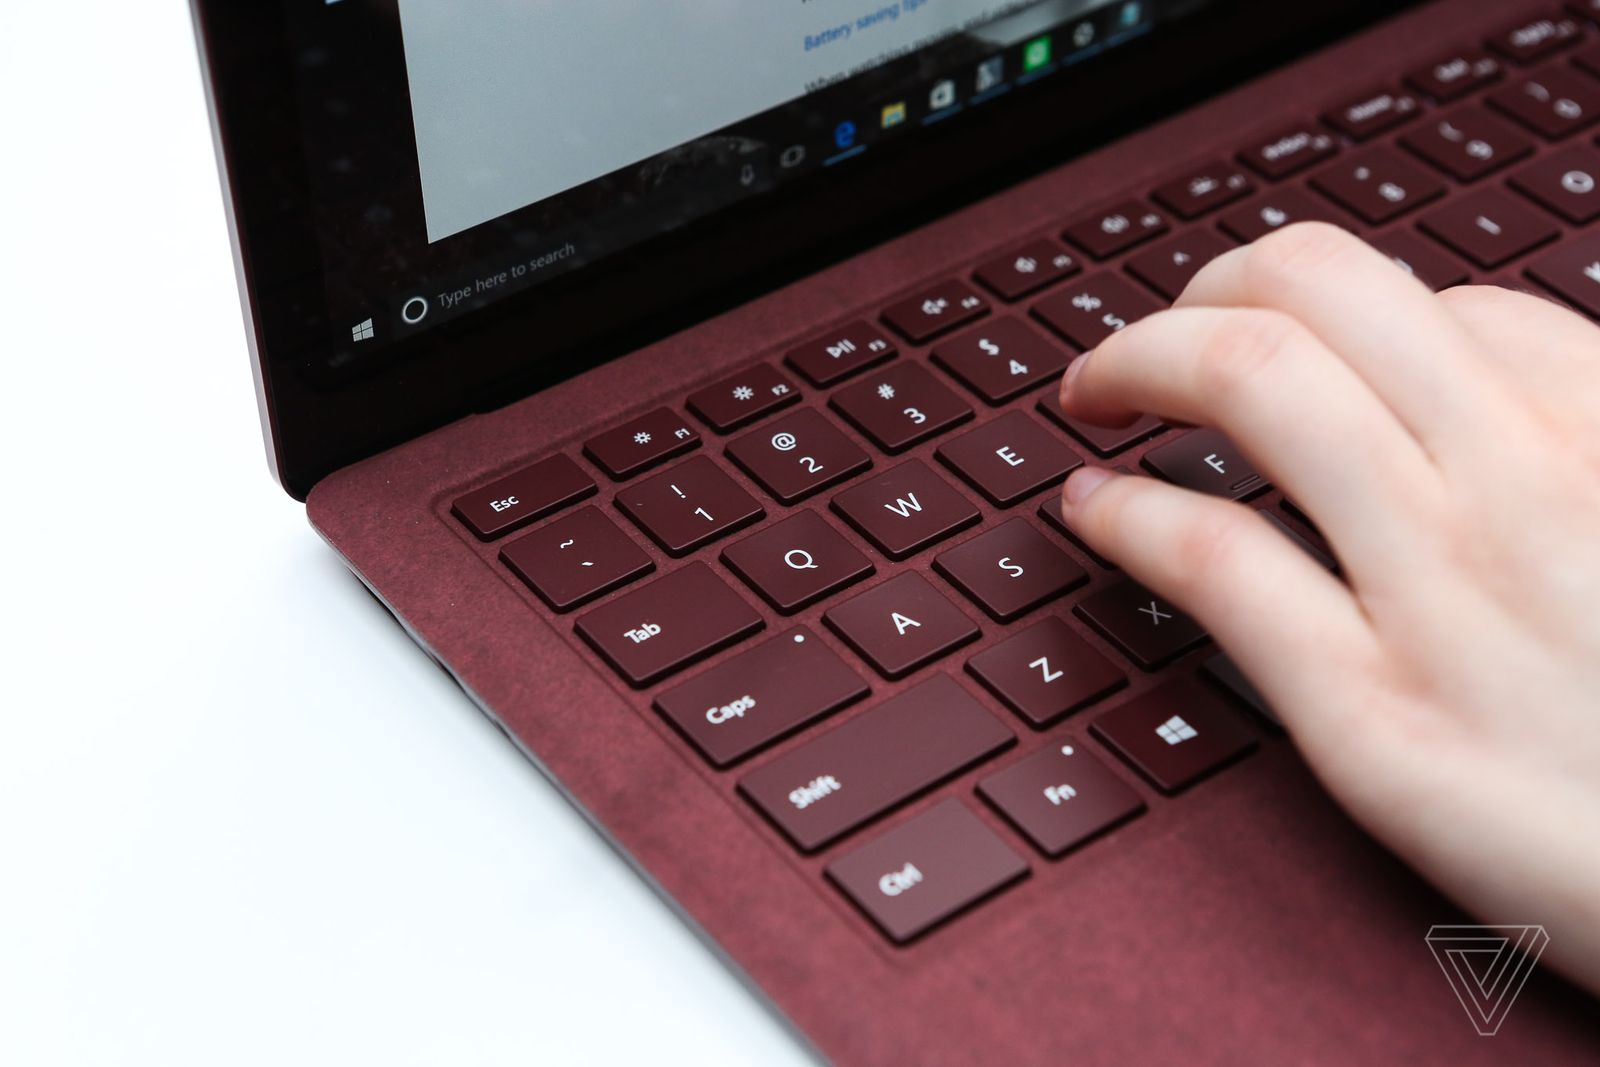 Cảm nhận nhanh Microsoft Surface Laptop: Đẹp